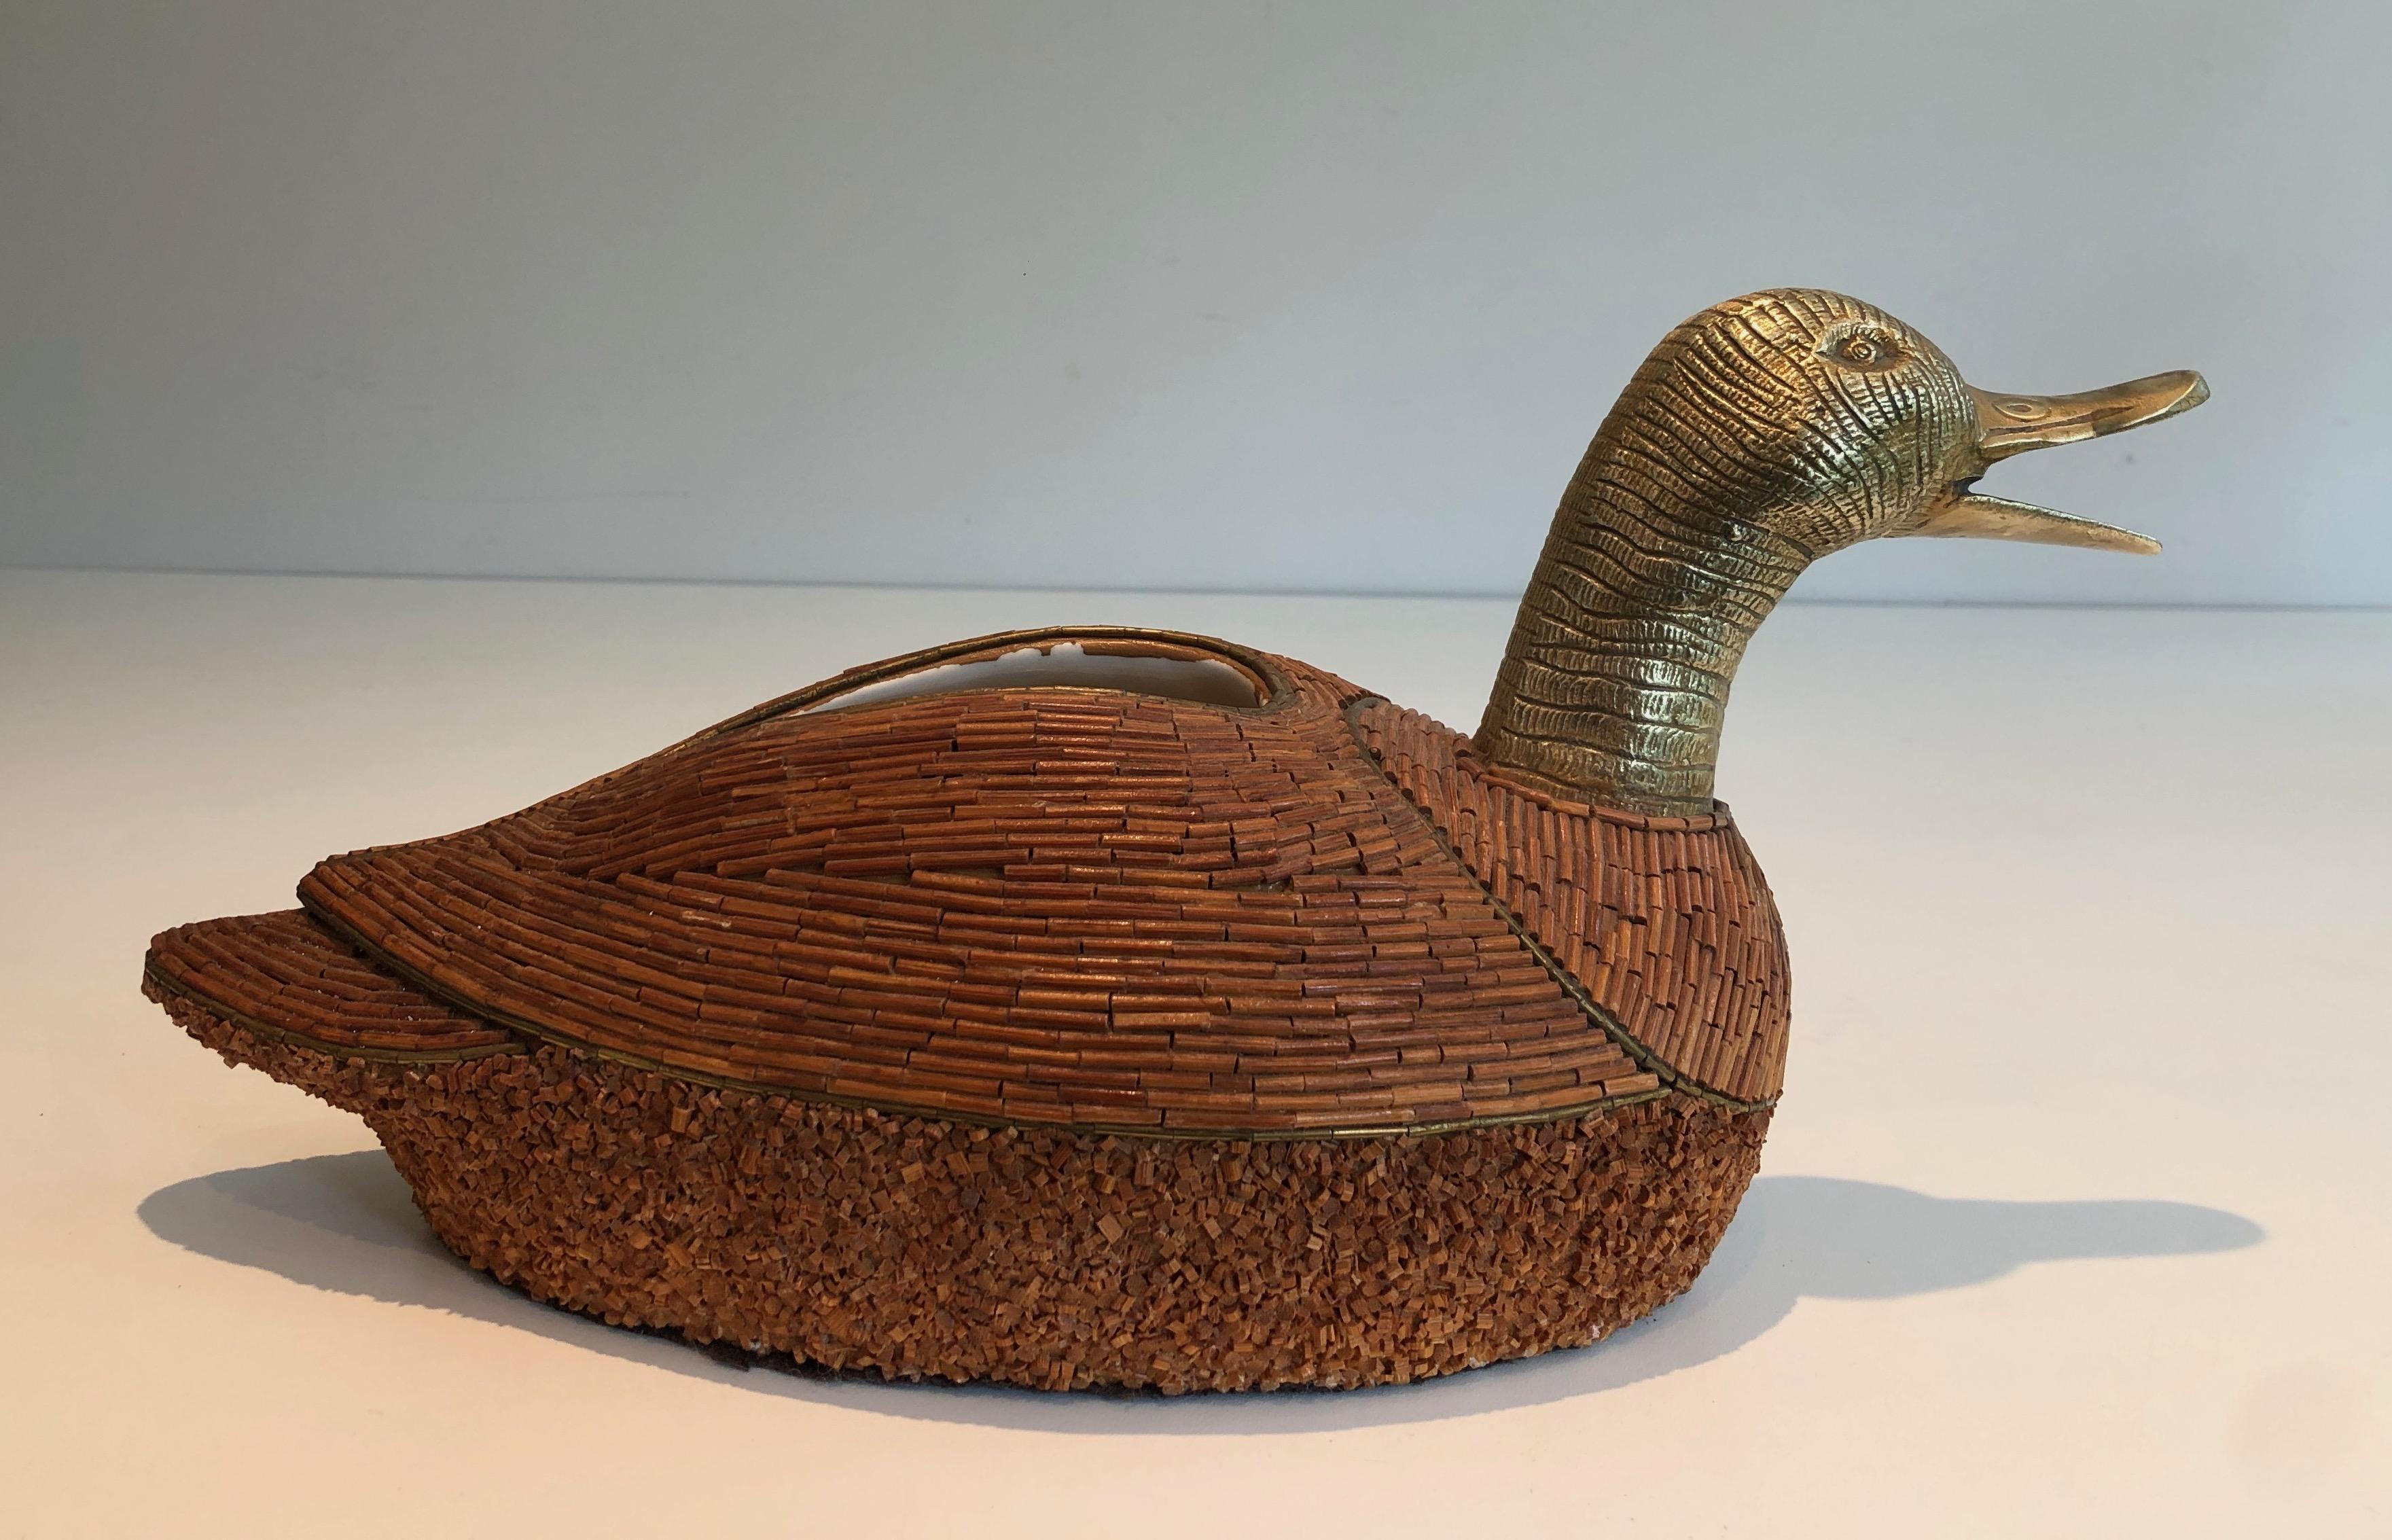 Ce vide-poche représentant un canard est réalisé en céramique et en laiton. Il s'agit d'une œuvre italienne signée Tarzia Firenze. Circa 1970